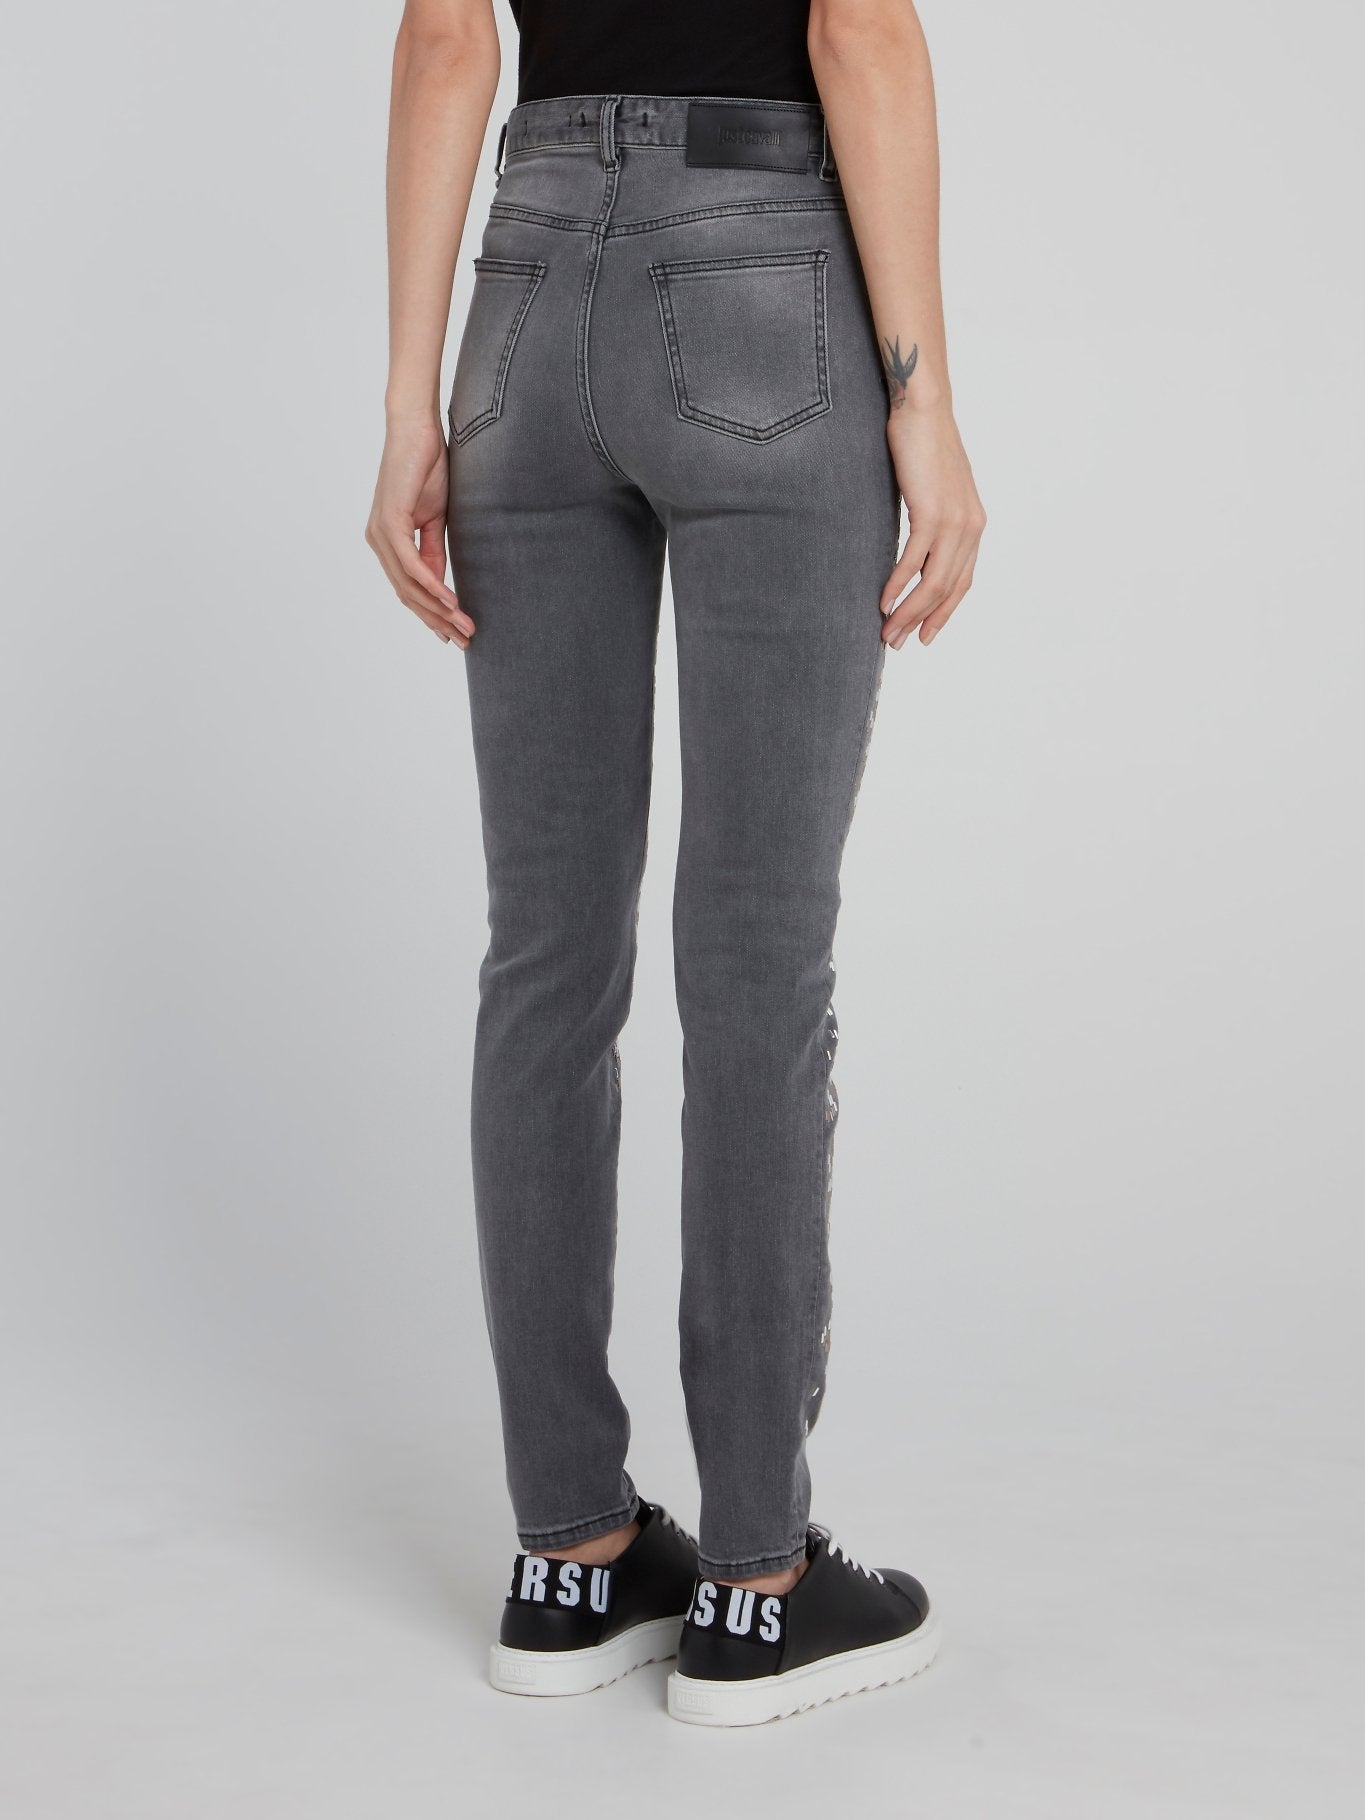 Grey Snake Effect Embellished Denim Jeans